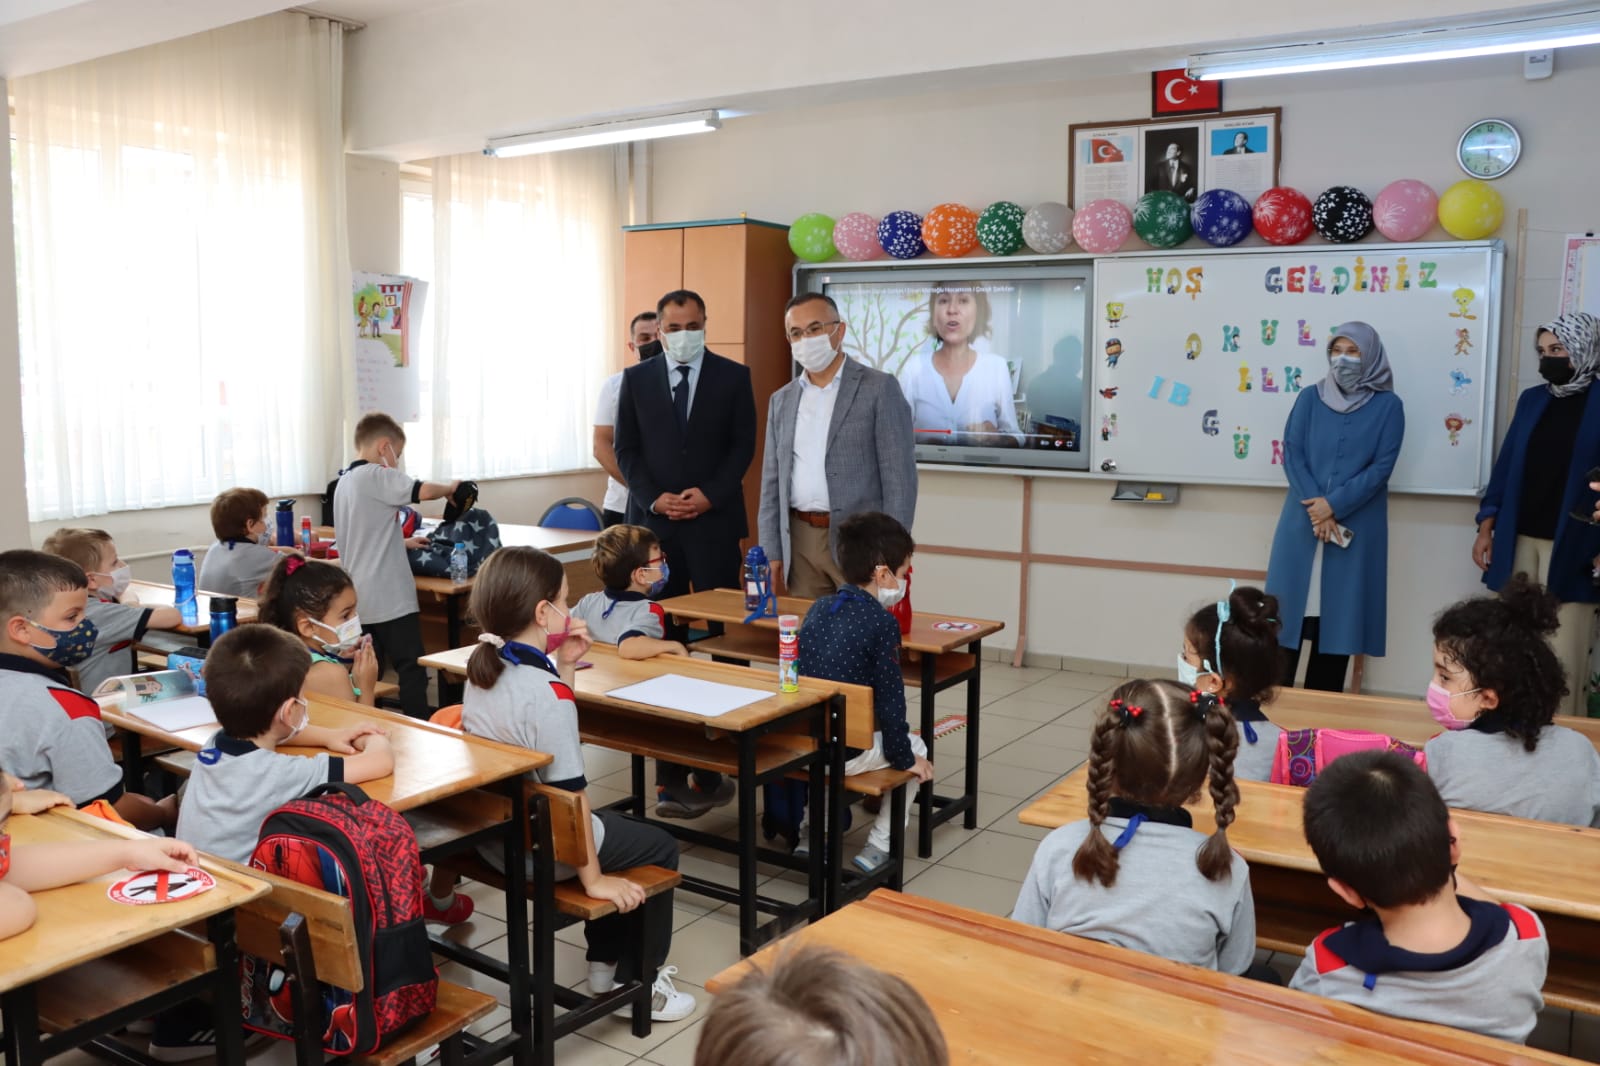 Rize Valisi Kemal Çeber, Minik Öğrencilerin Heyecanına Ortak Oldu